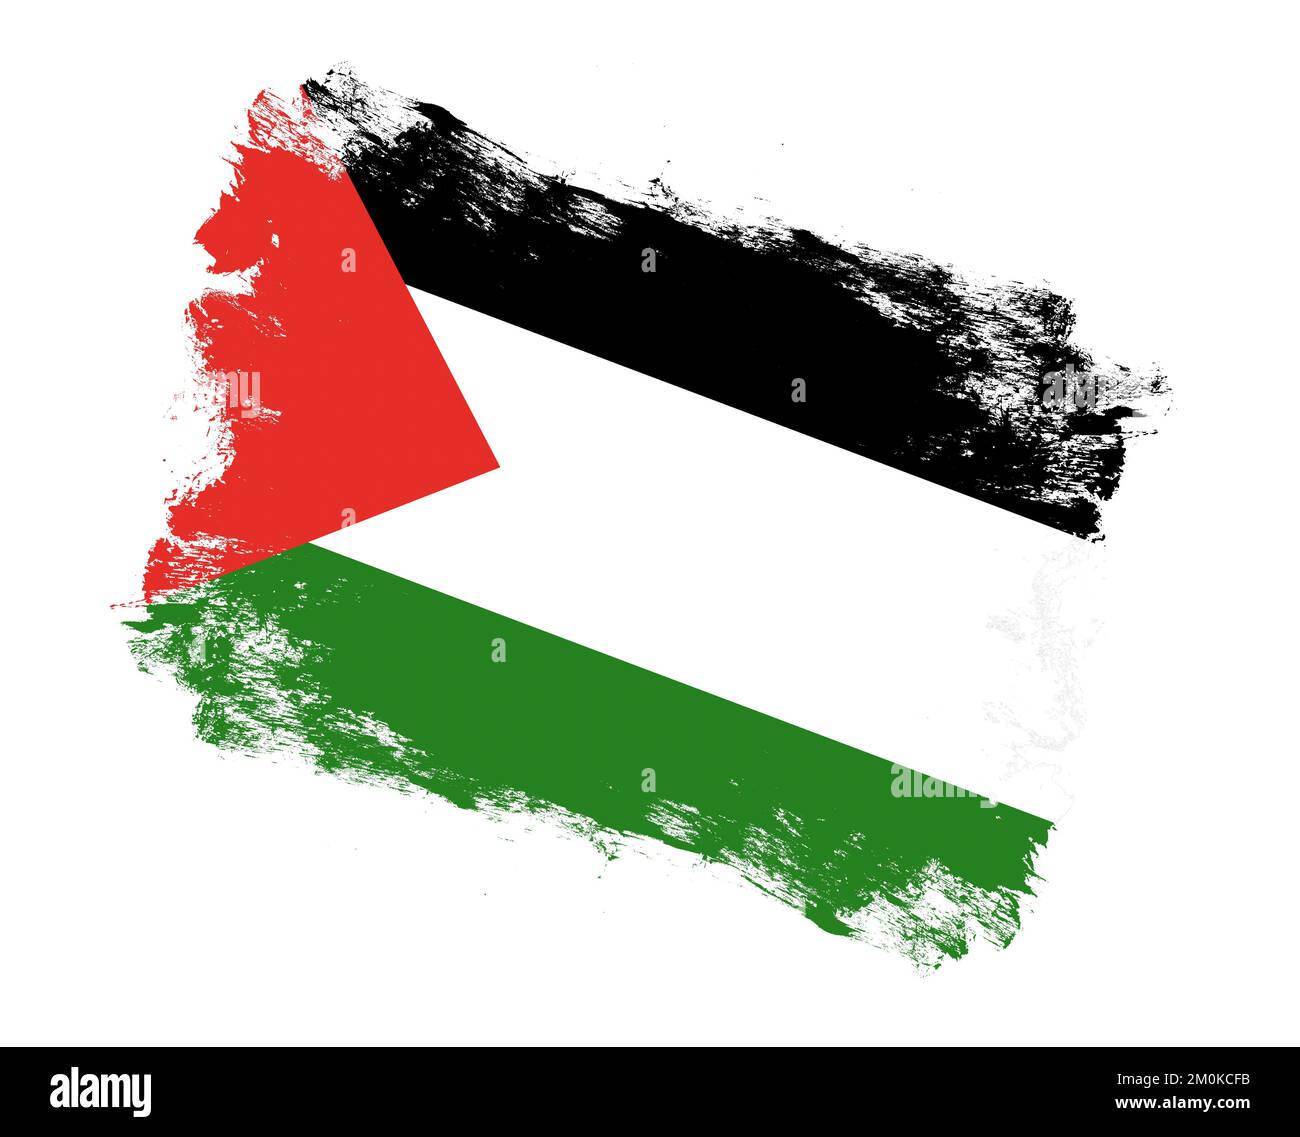 Bandera De Palestina. Trazos De Pincel Negro, Blanco Y Verde